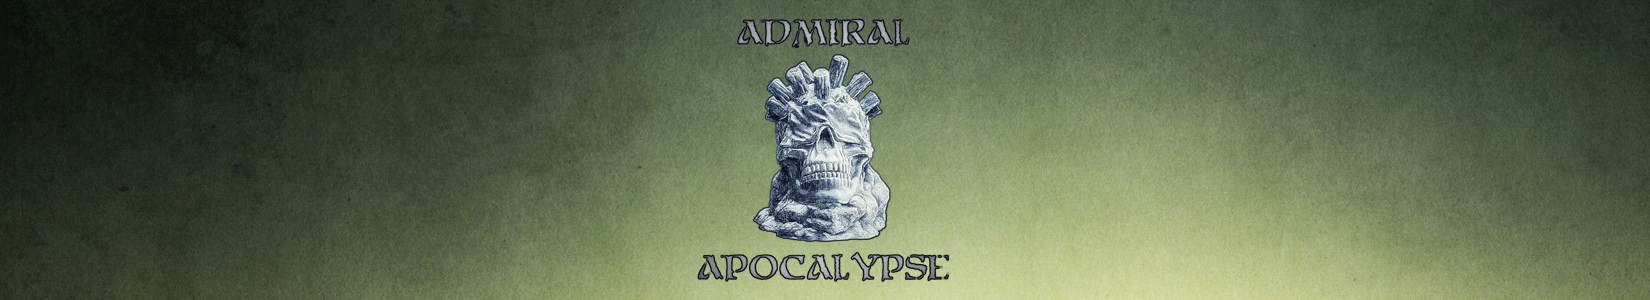 Admiral Apocalypse